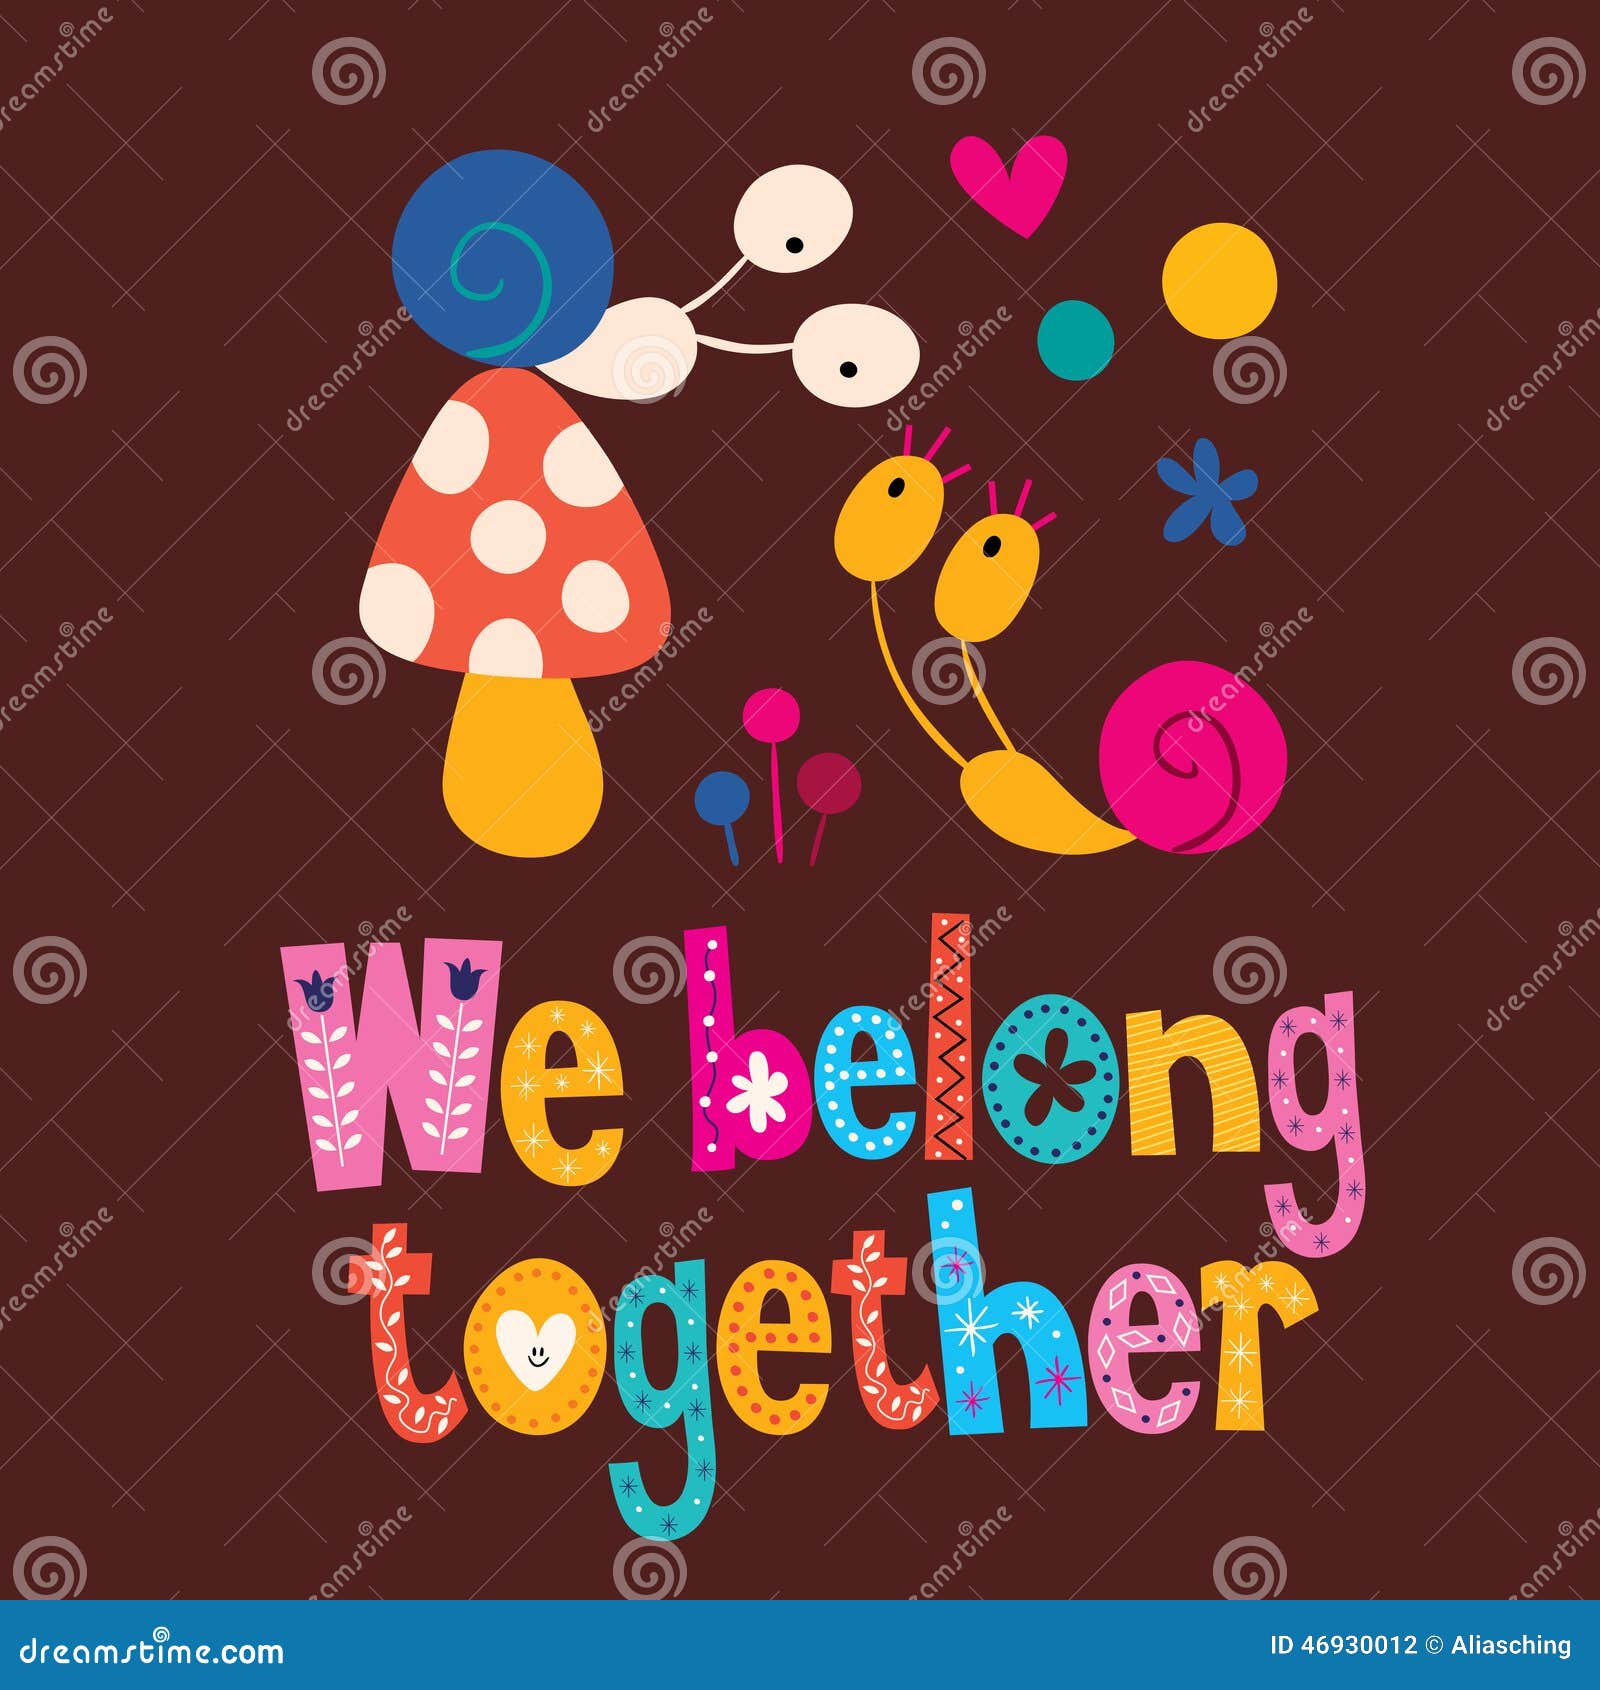 we belong together love card